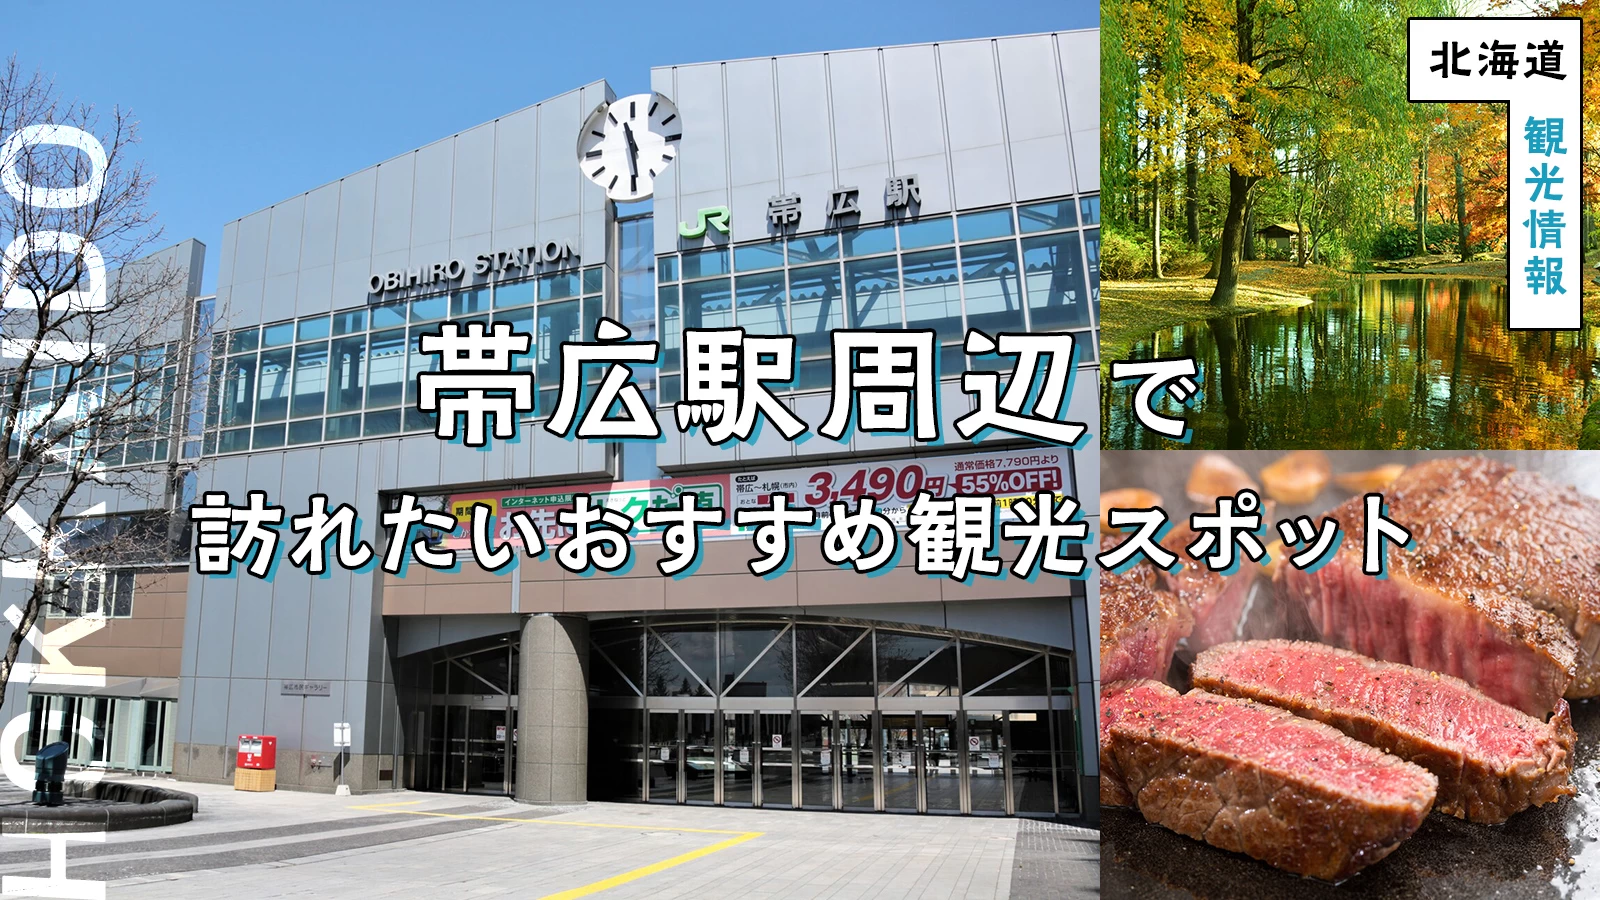 【北海道・観光情報】帯広駅周辺で訪れたいおすすめスポット10選